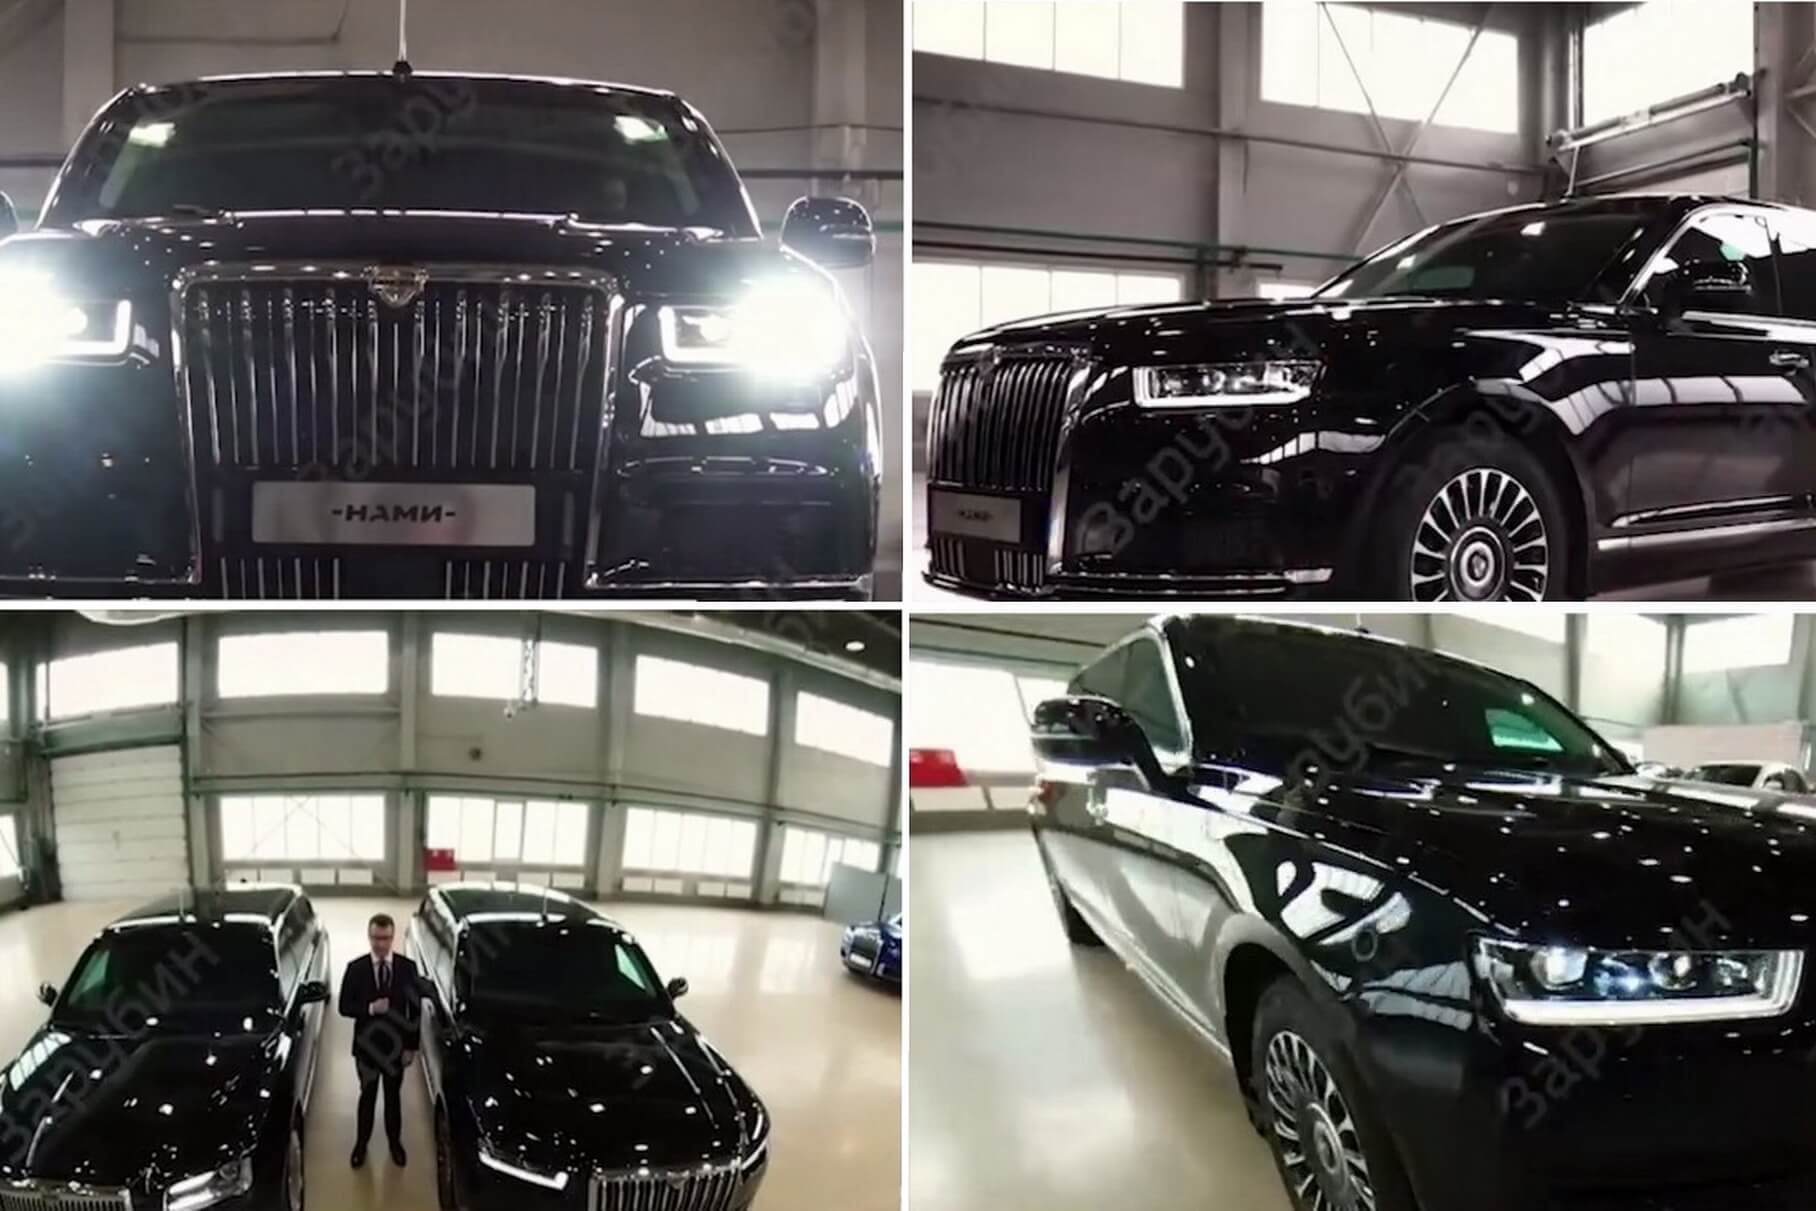 Vladimir Putin’s new Aurus limousine was shown before the inauguration